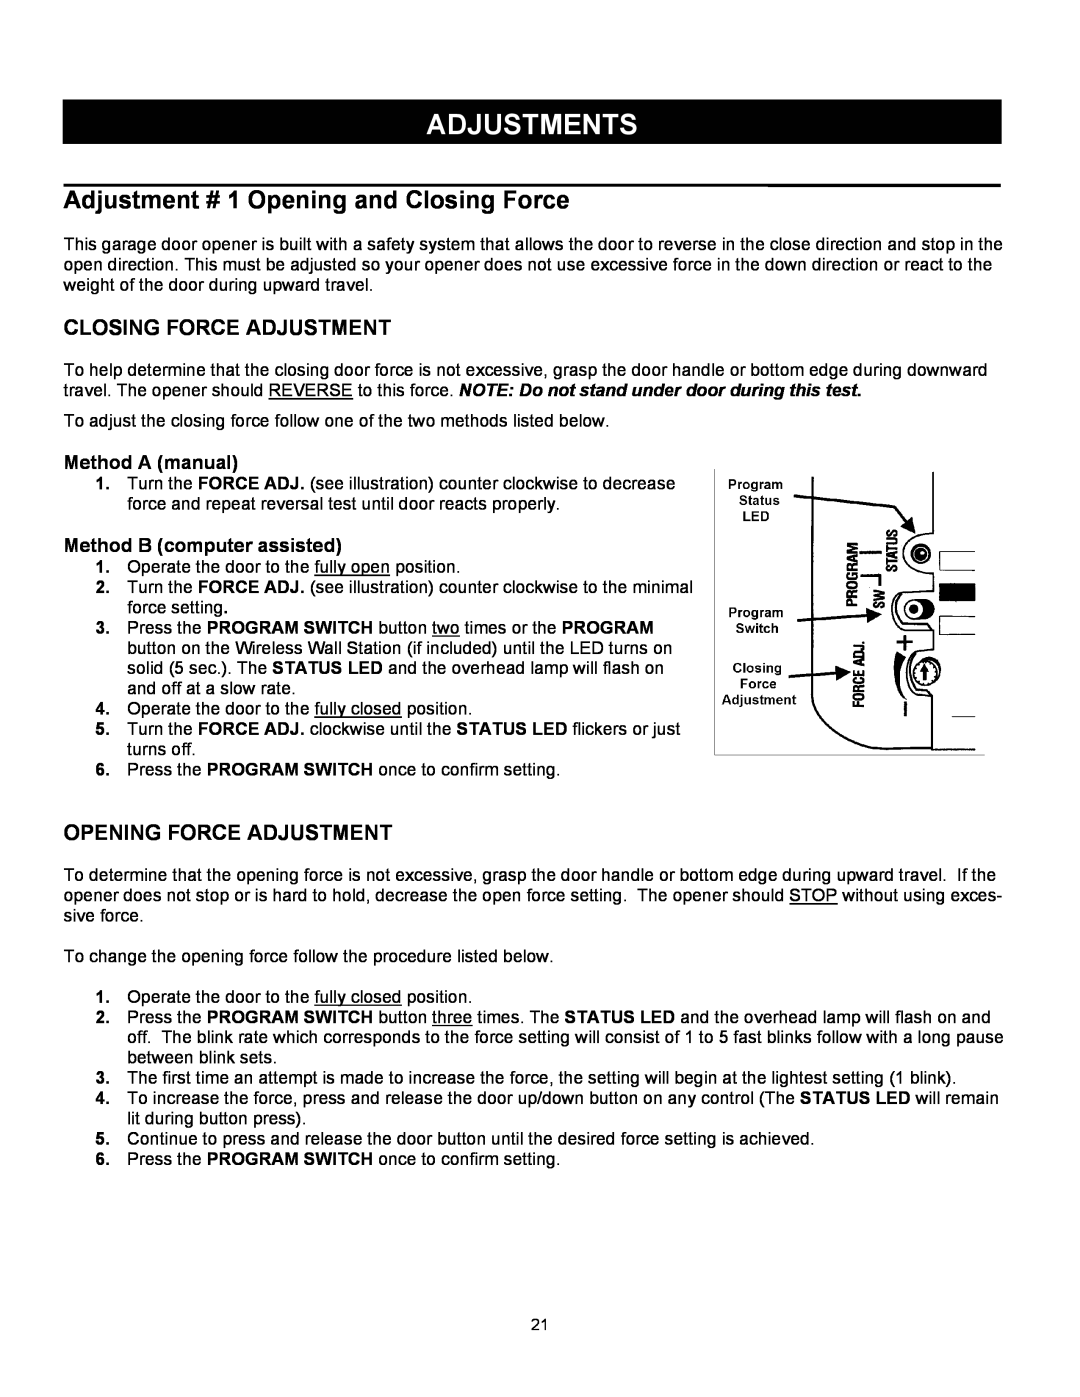 Quantum 3214 Adjustments, Closing Force Adjustment, Opening Force Adjustment, Method A manual, Method B computer assisted 